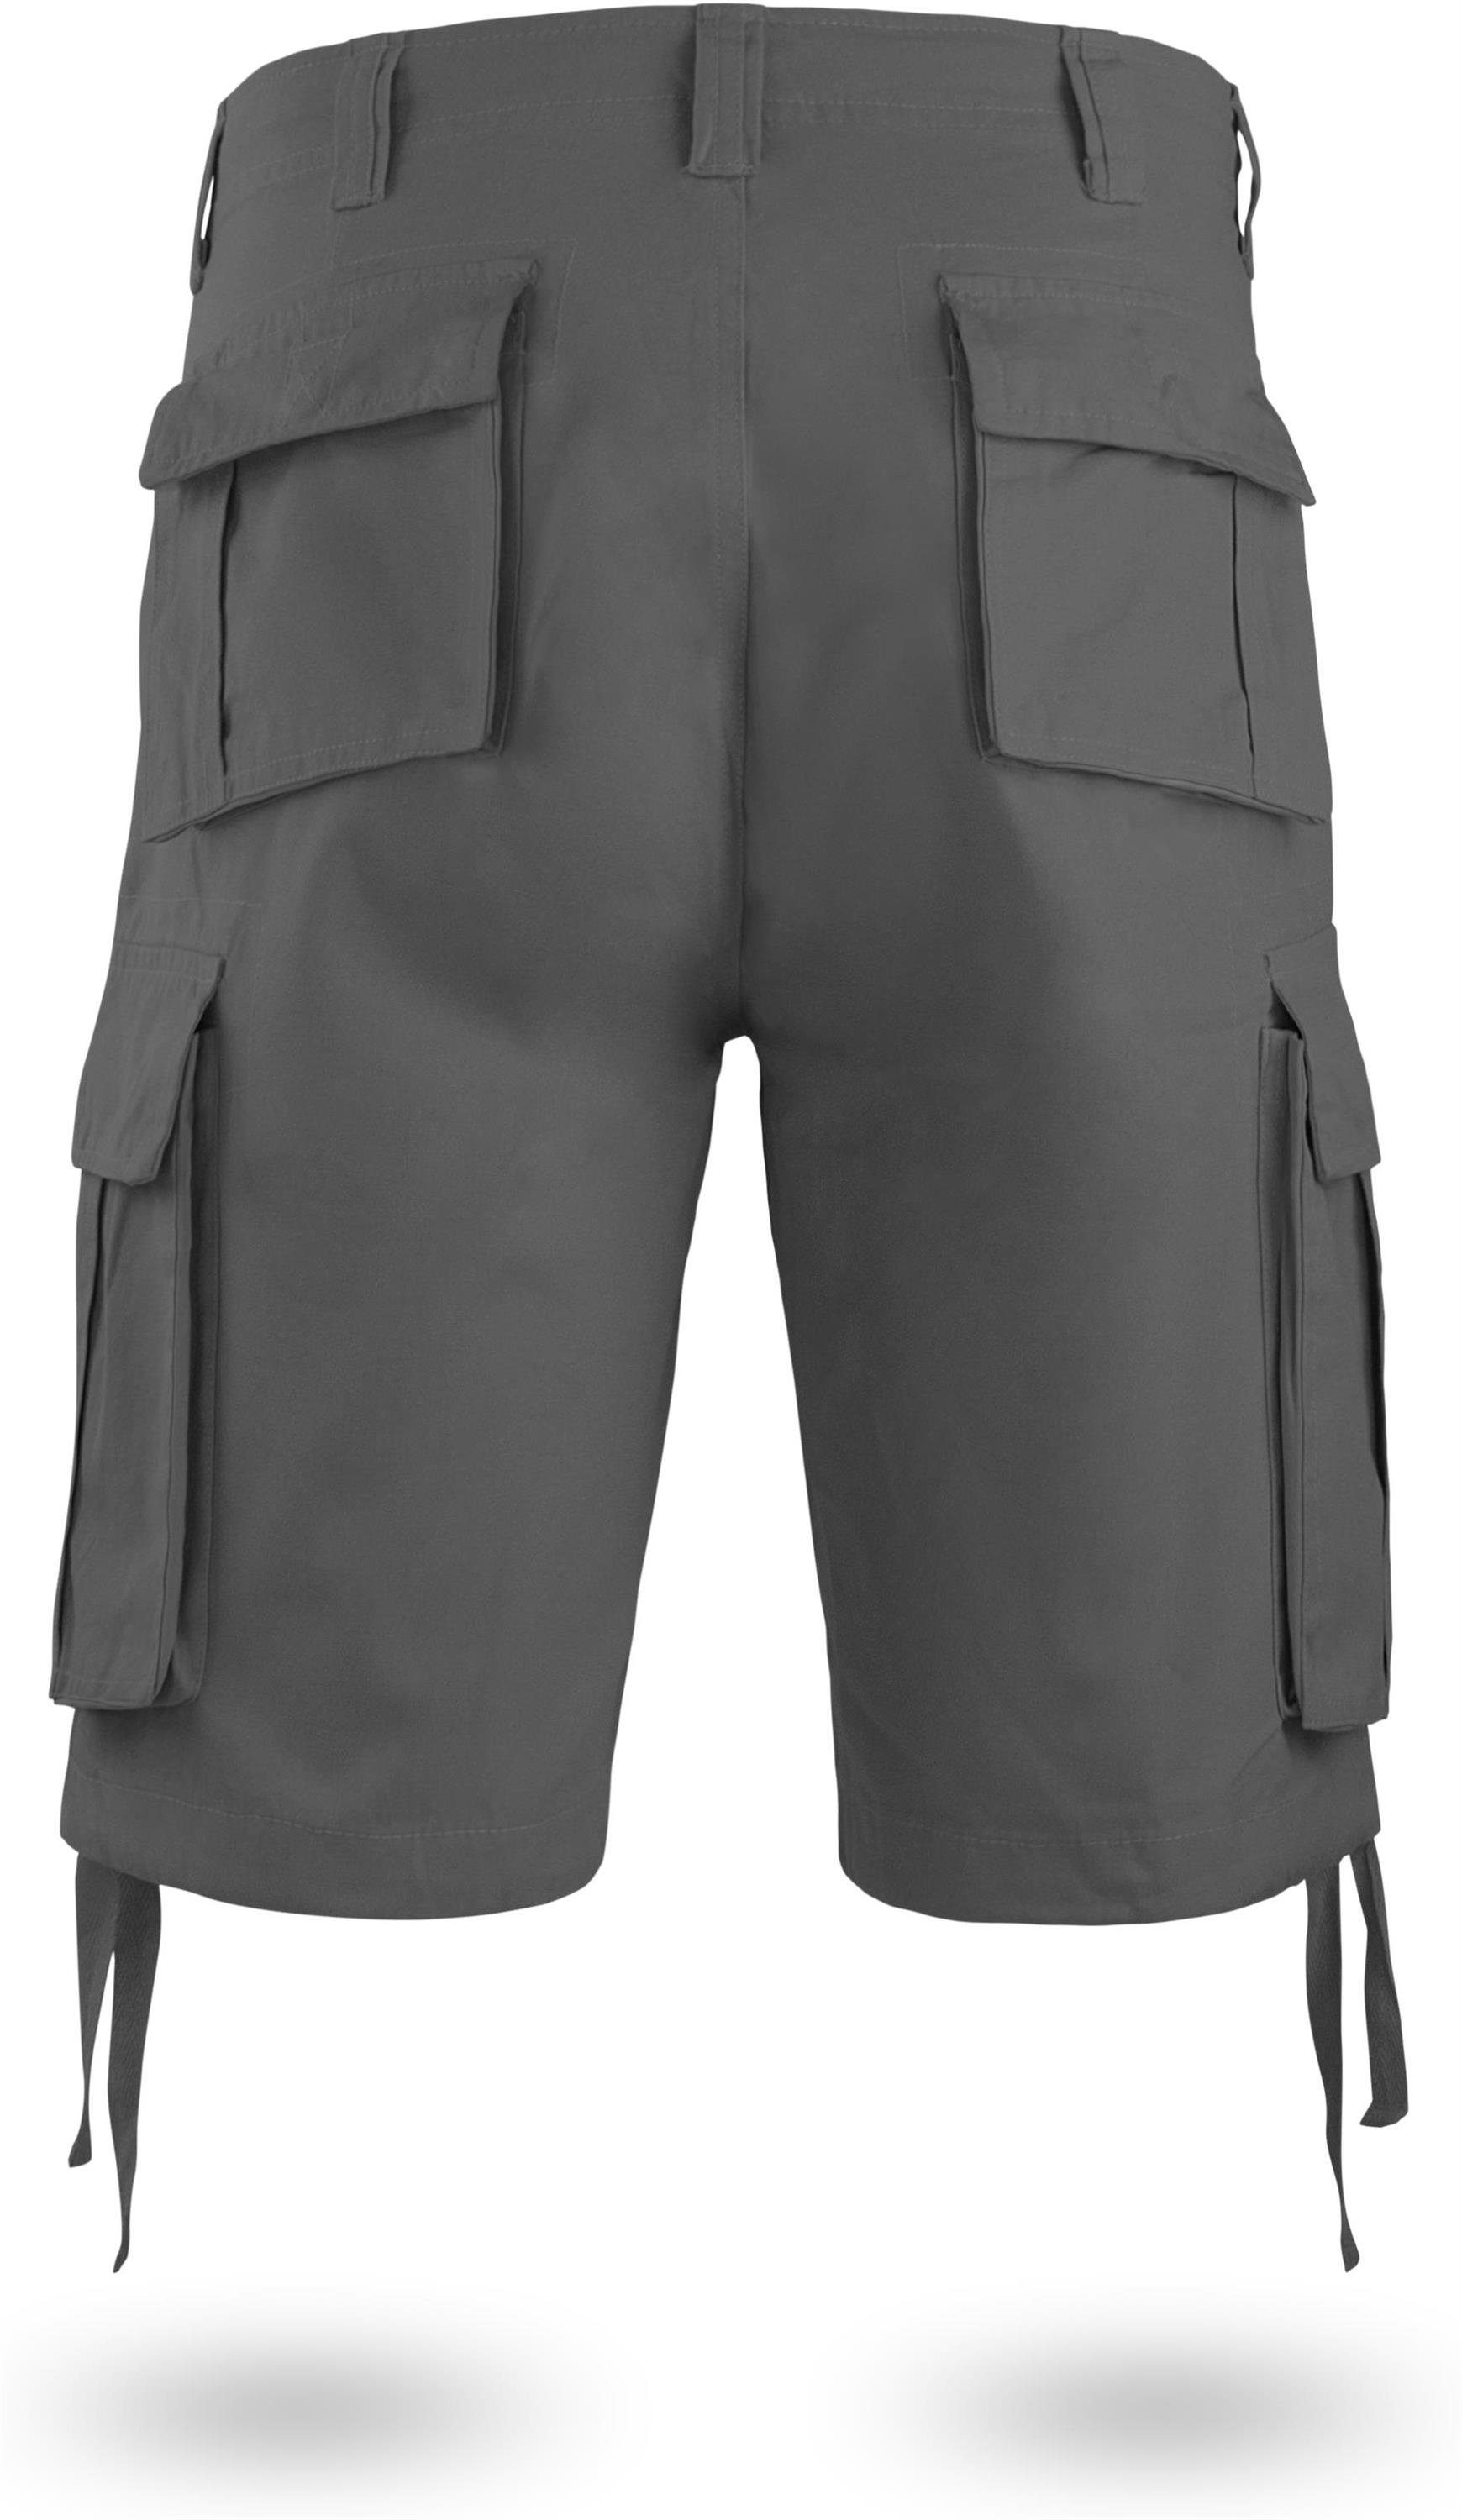 normani Bermudas Herren Shorts Kalahari Sommershorts mit Shorts Anthrazit Vintage aus kurze Cargotaschen 100% Bio-Baumwolle